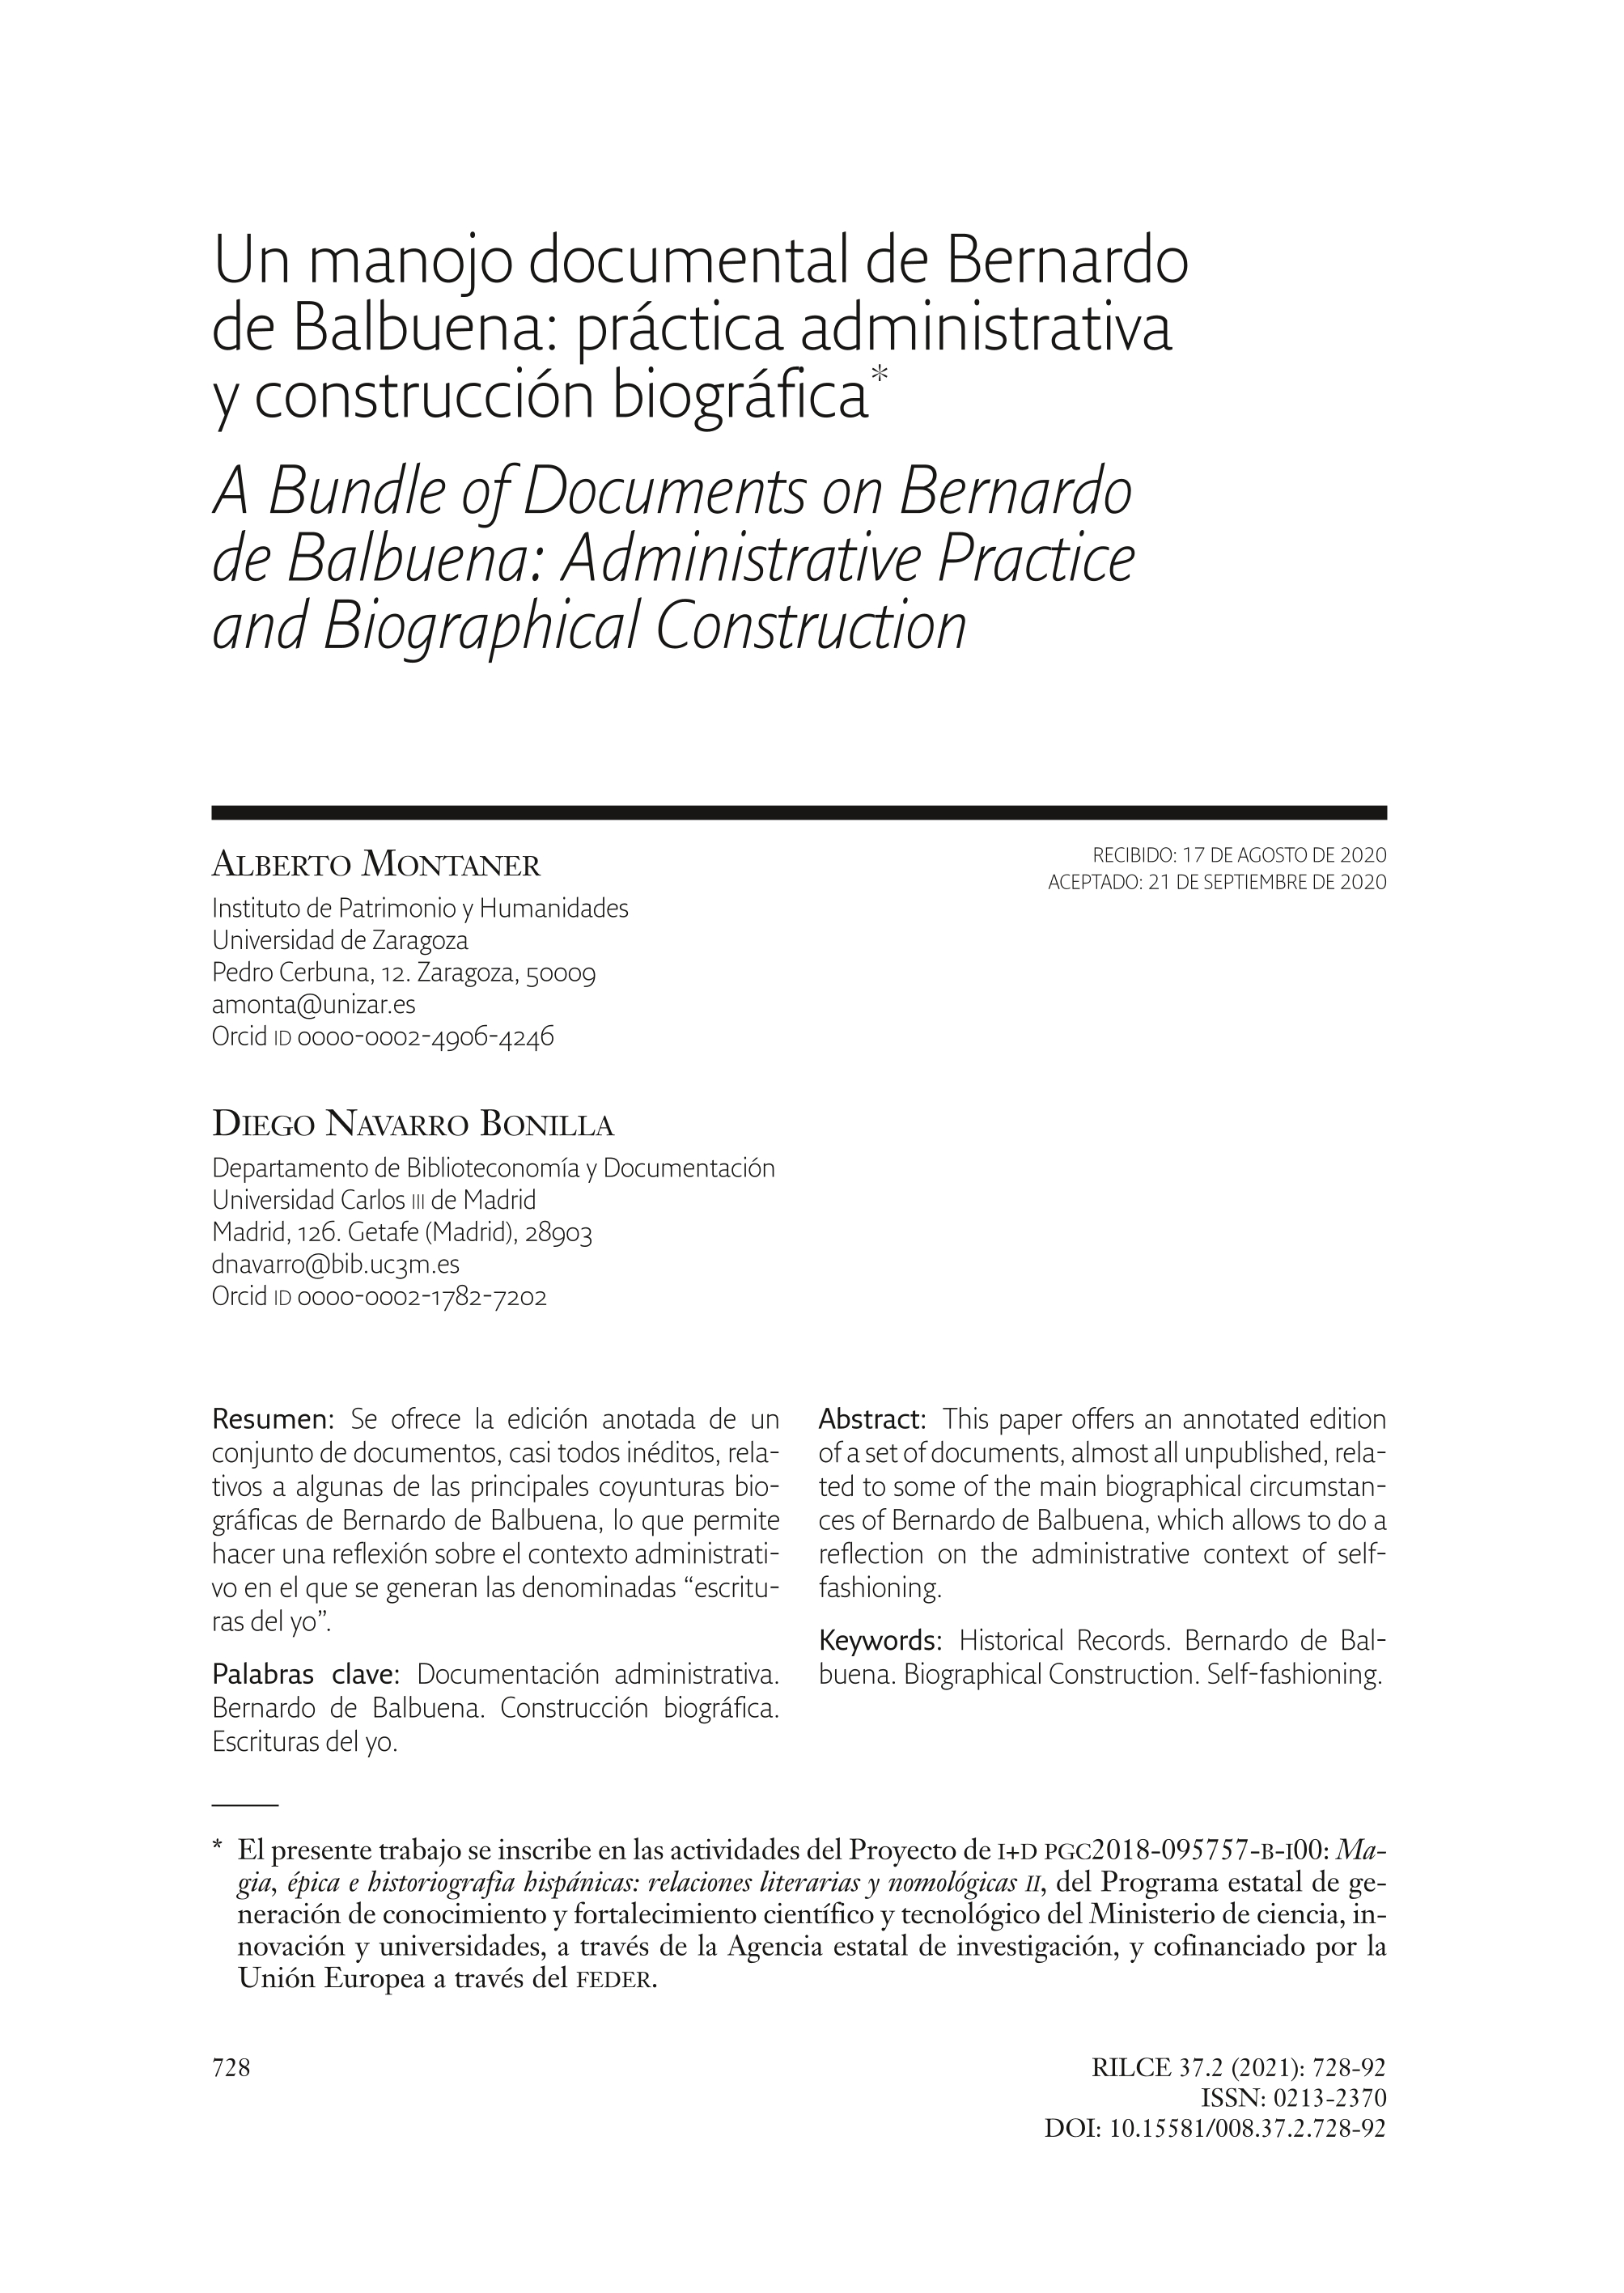 Un manojo documental de Bernardo de Balbuena: Práctica administrativa y construcción biográfica